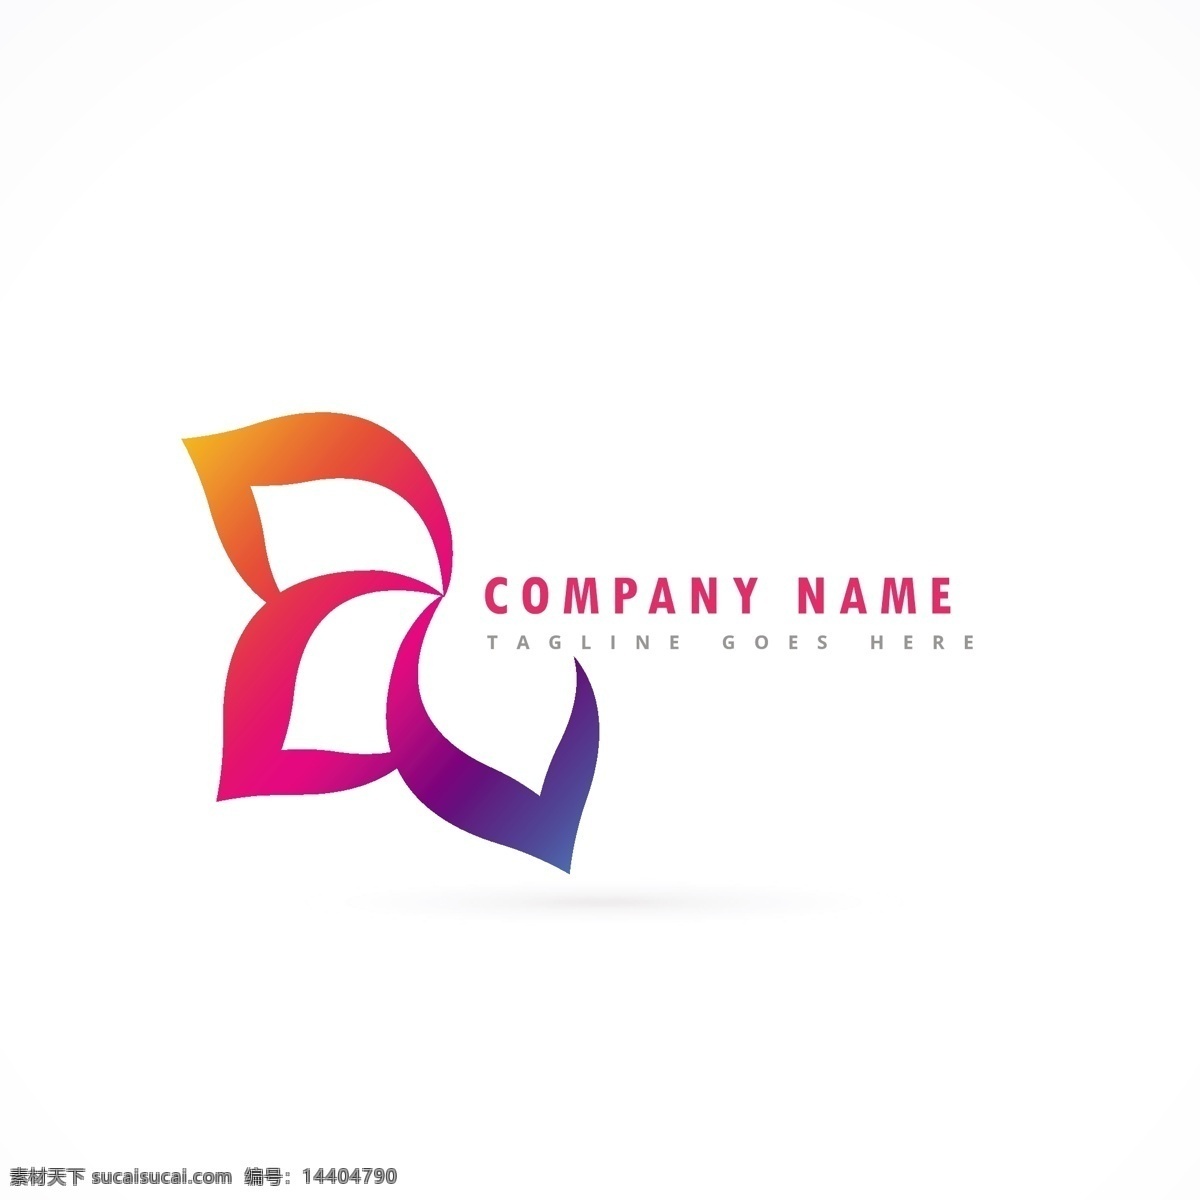 三个 花瓣 公司 标志 logo 模板 抽象 渐变 扁平化 企业徽标 三个花瓣